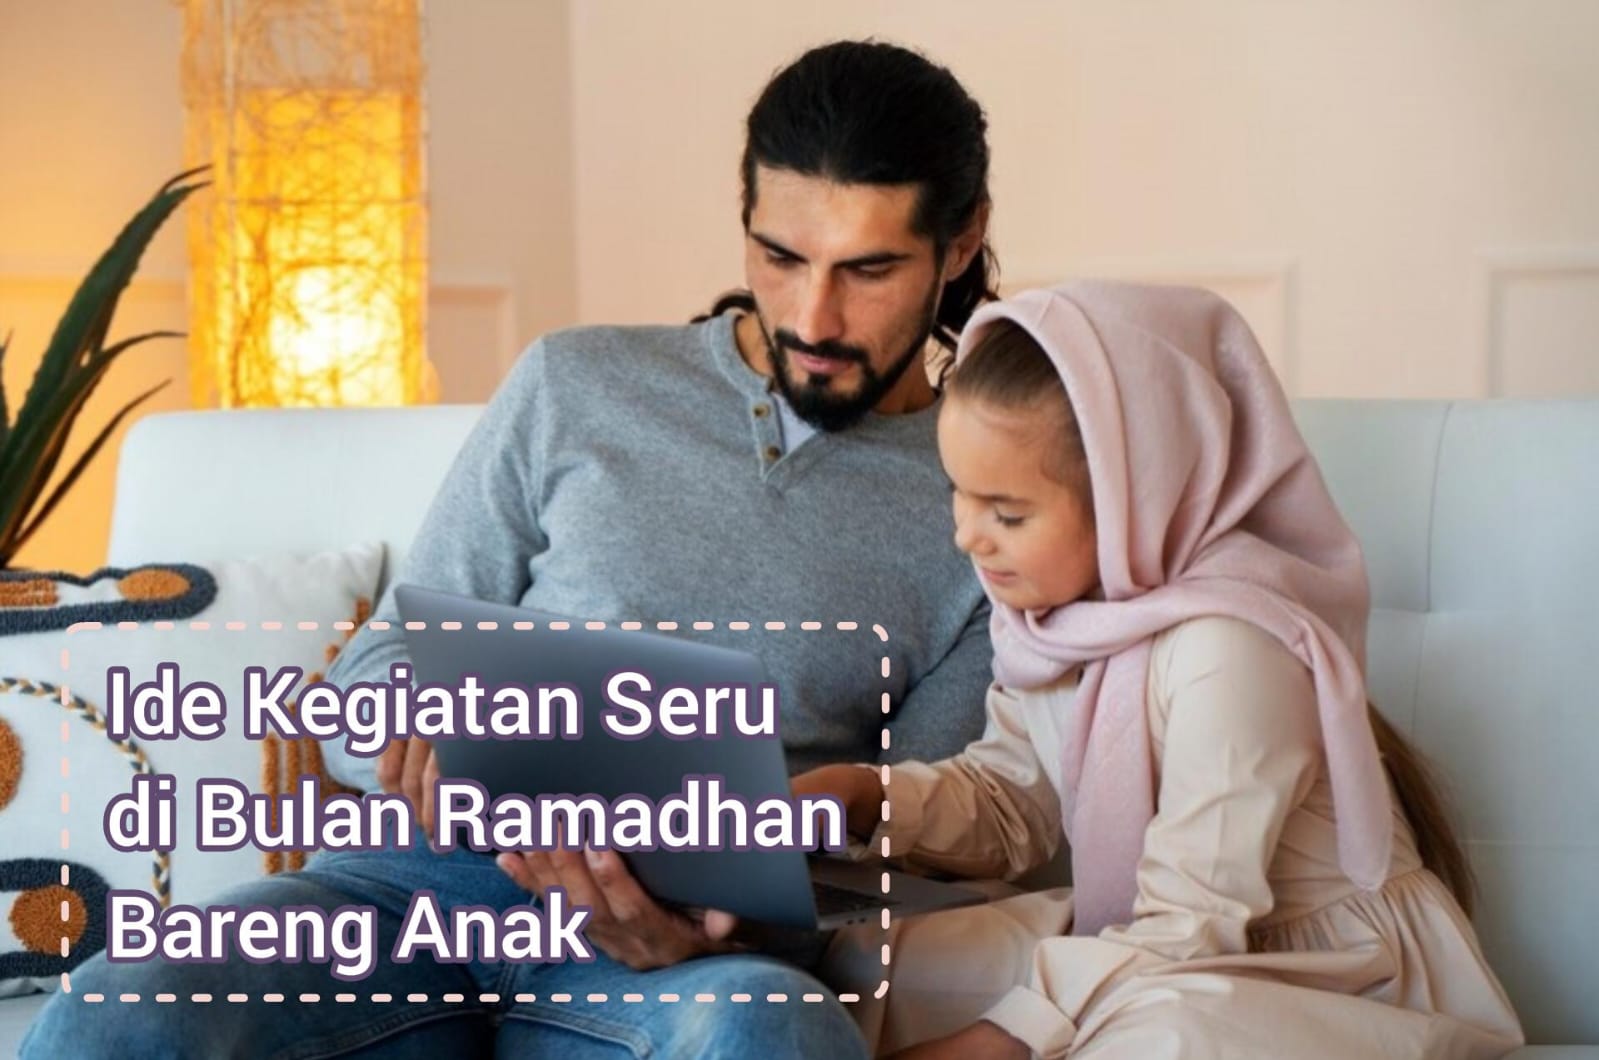 Rekomendasi 5 Aktifitas Seru di Bulan Ramadhan bareng Anak, Bikin Anak Lebih Kuat dan Semangat Berpuasa